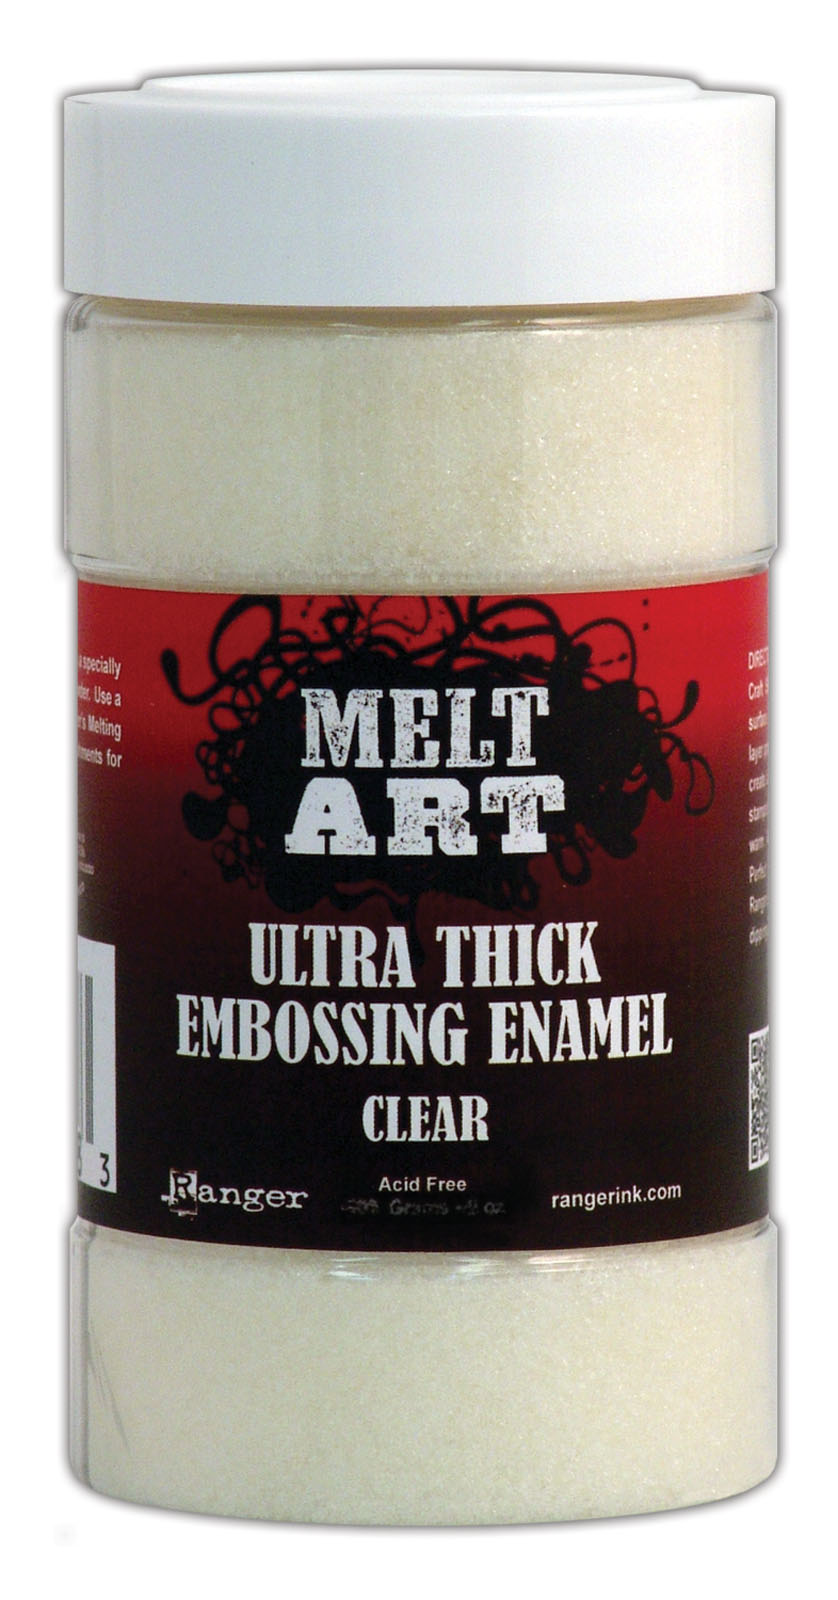 Ranger • Melt art Ultra thick Embossing Enamel Clear